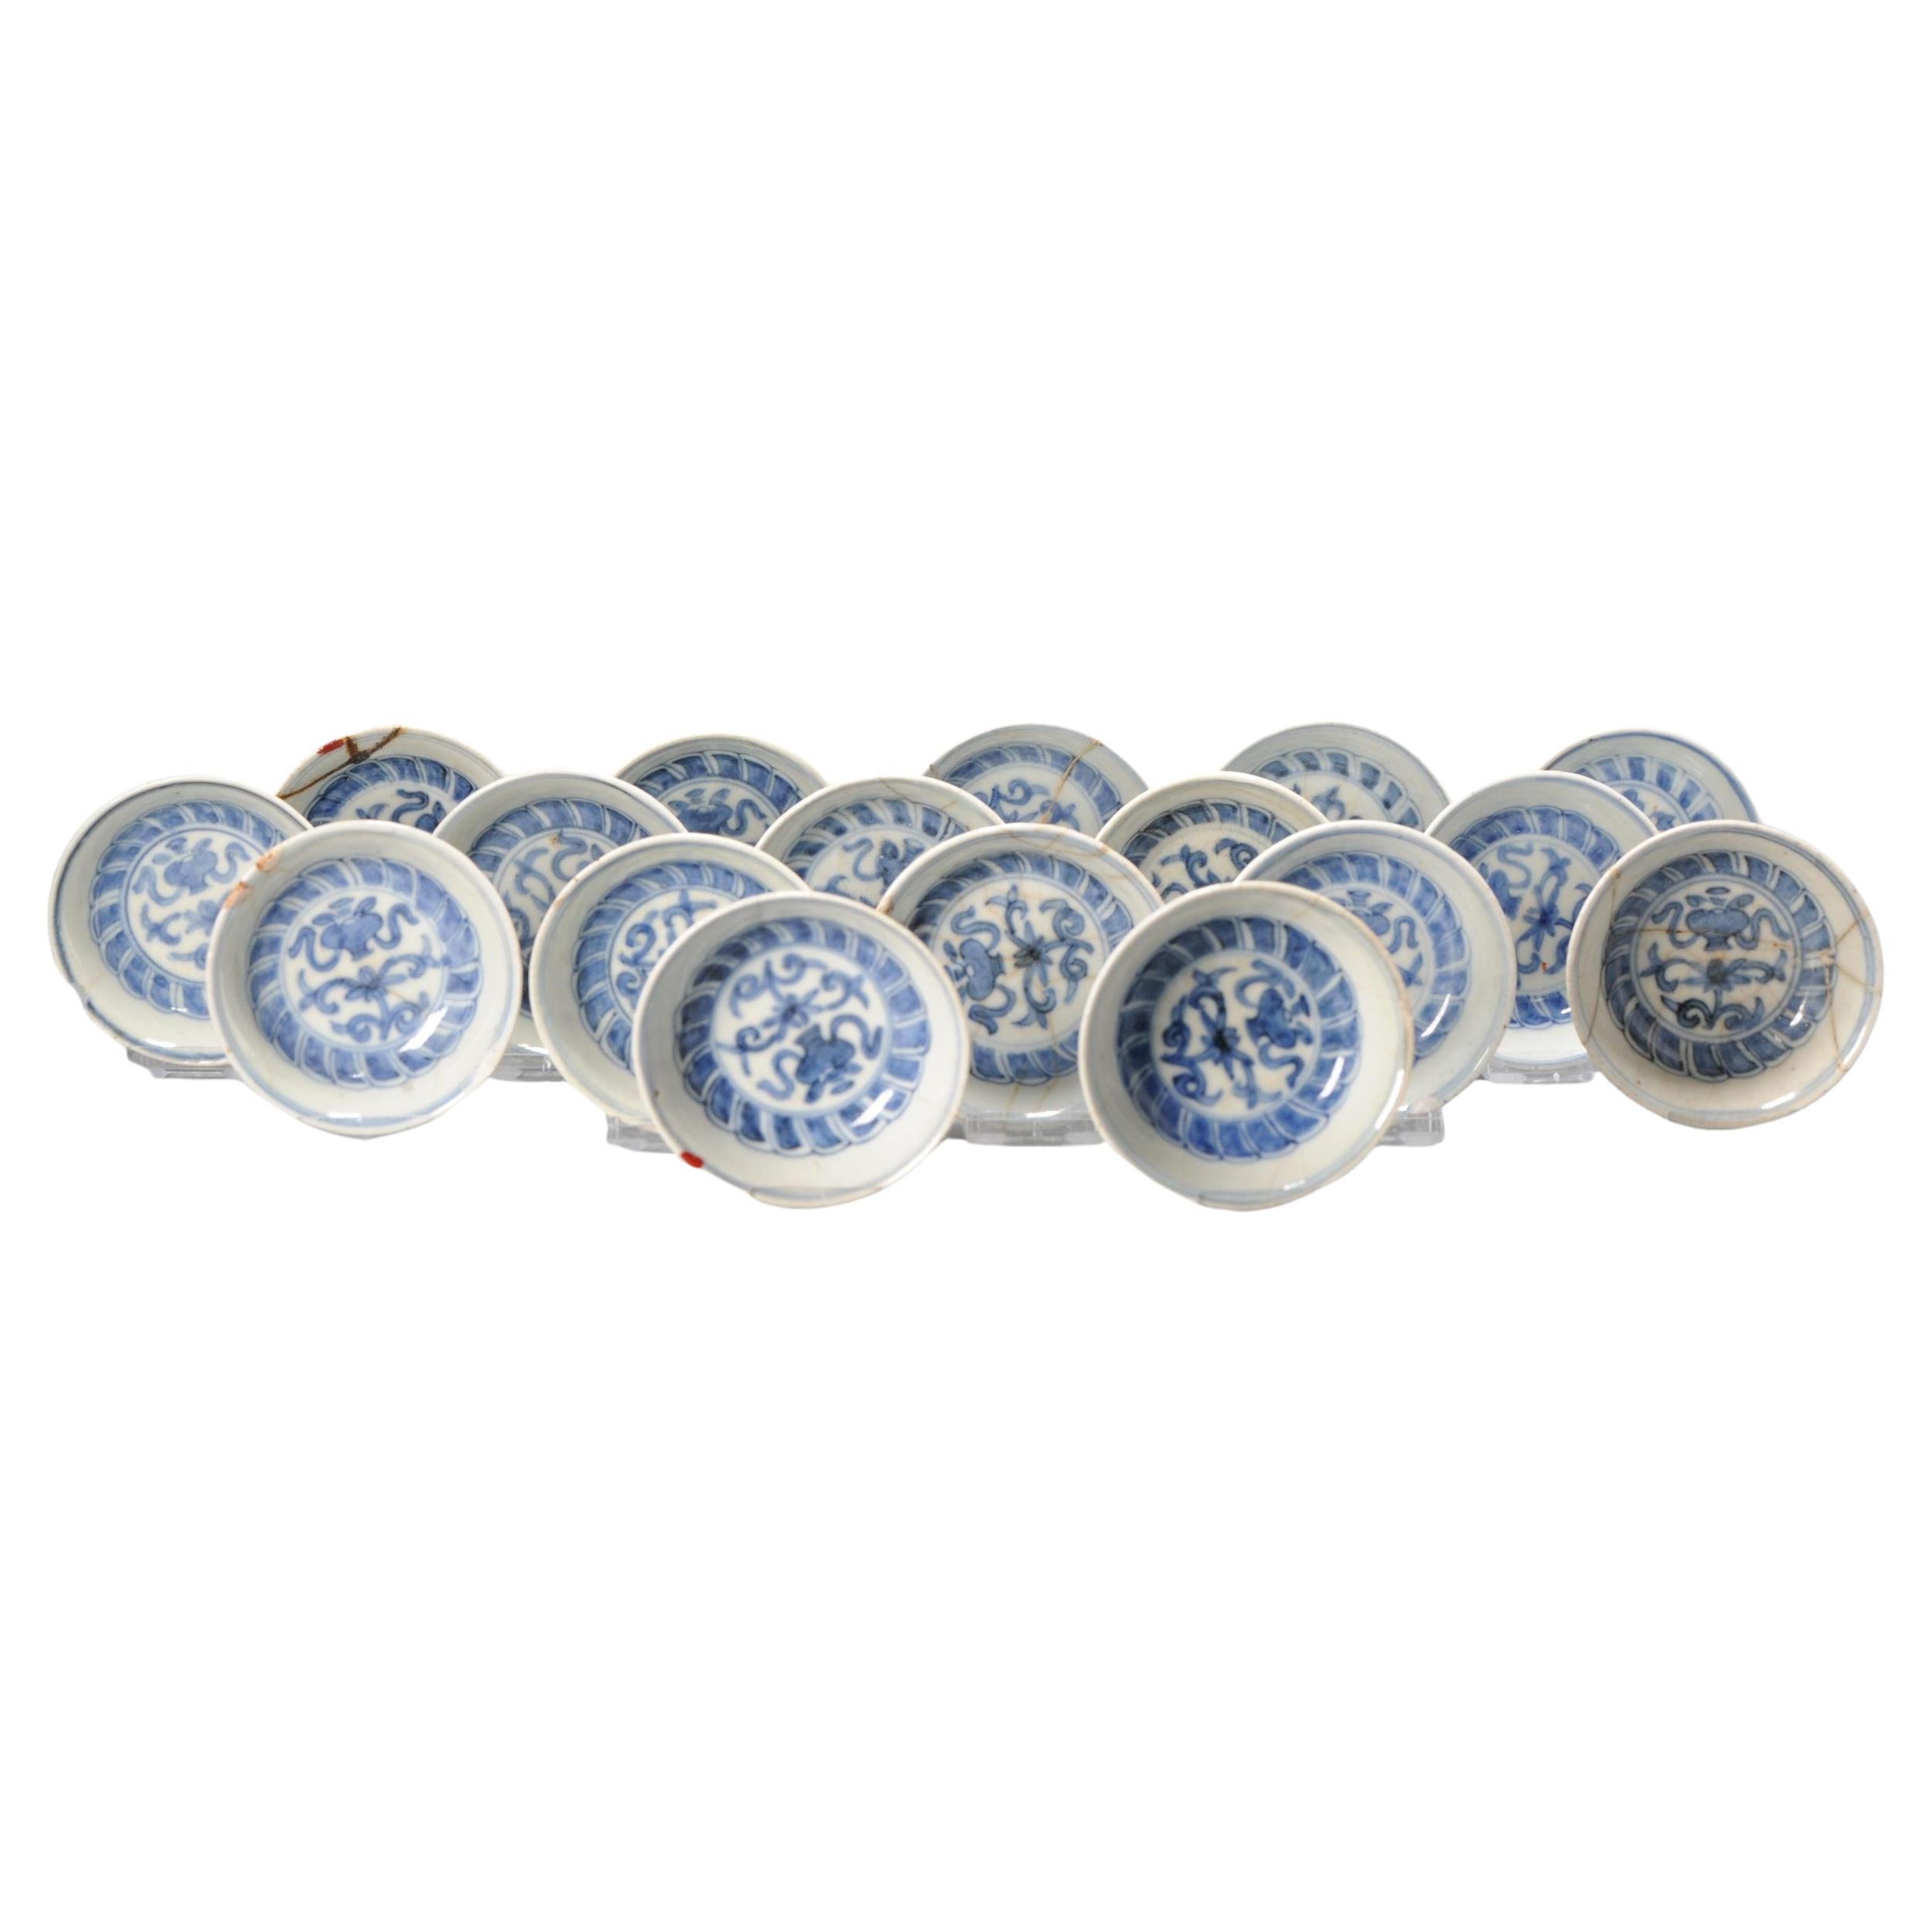 Ensemble de 17 grandes assiettes anciennes Kosometsuke de la dynastie chinoise Ming Ming, 17e siècle